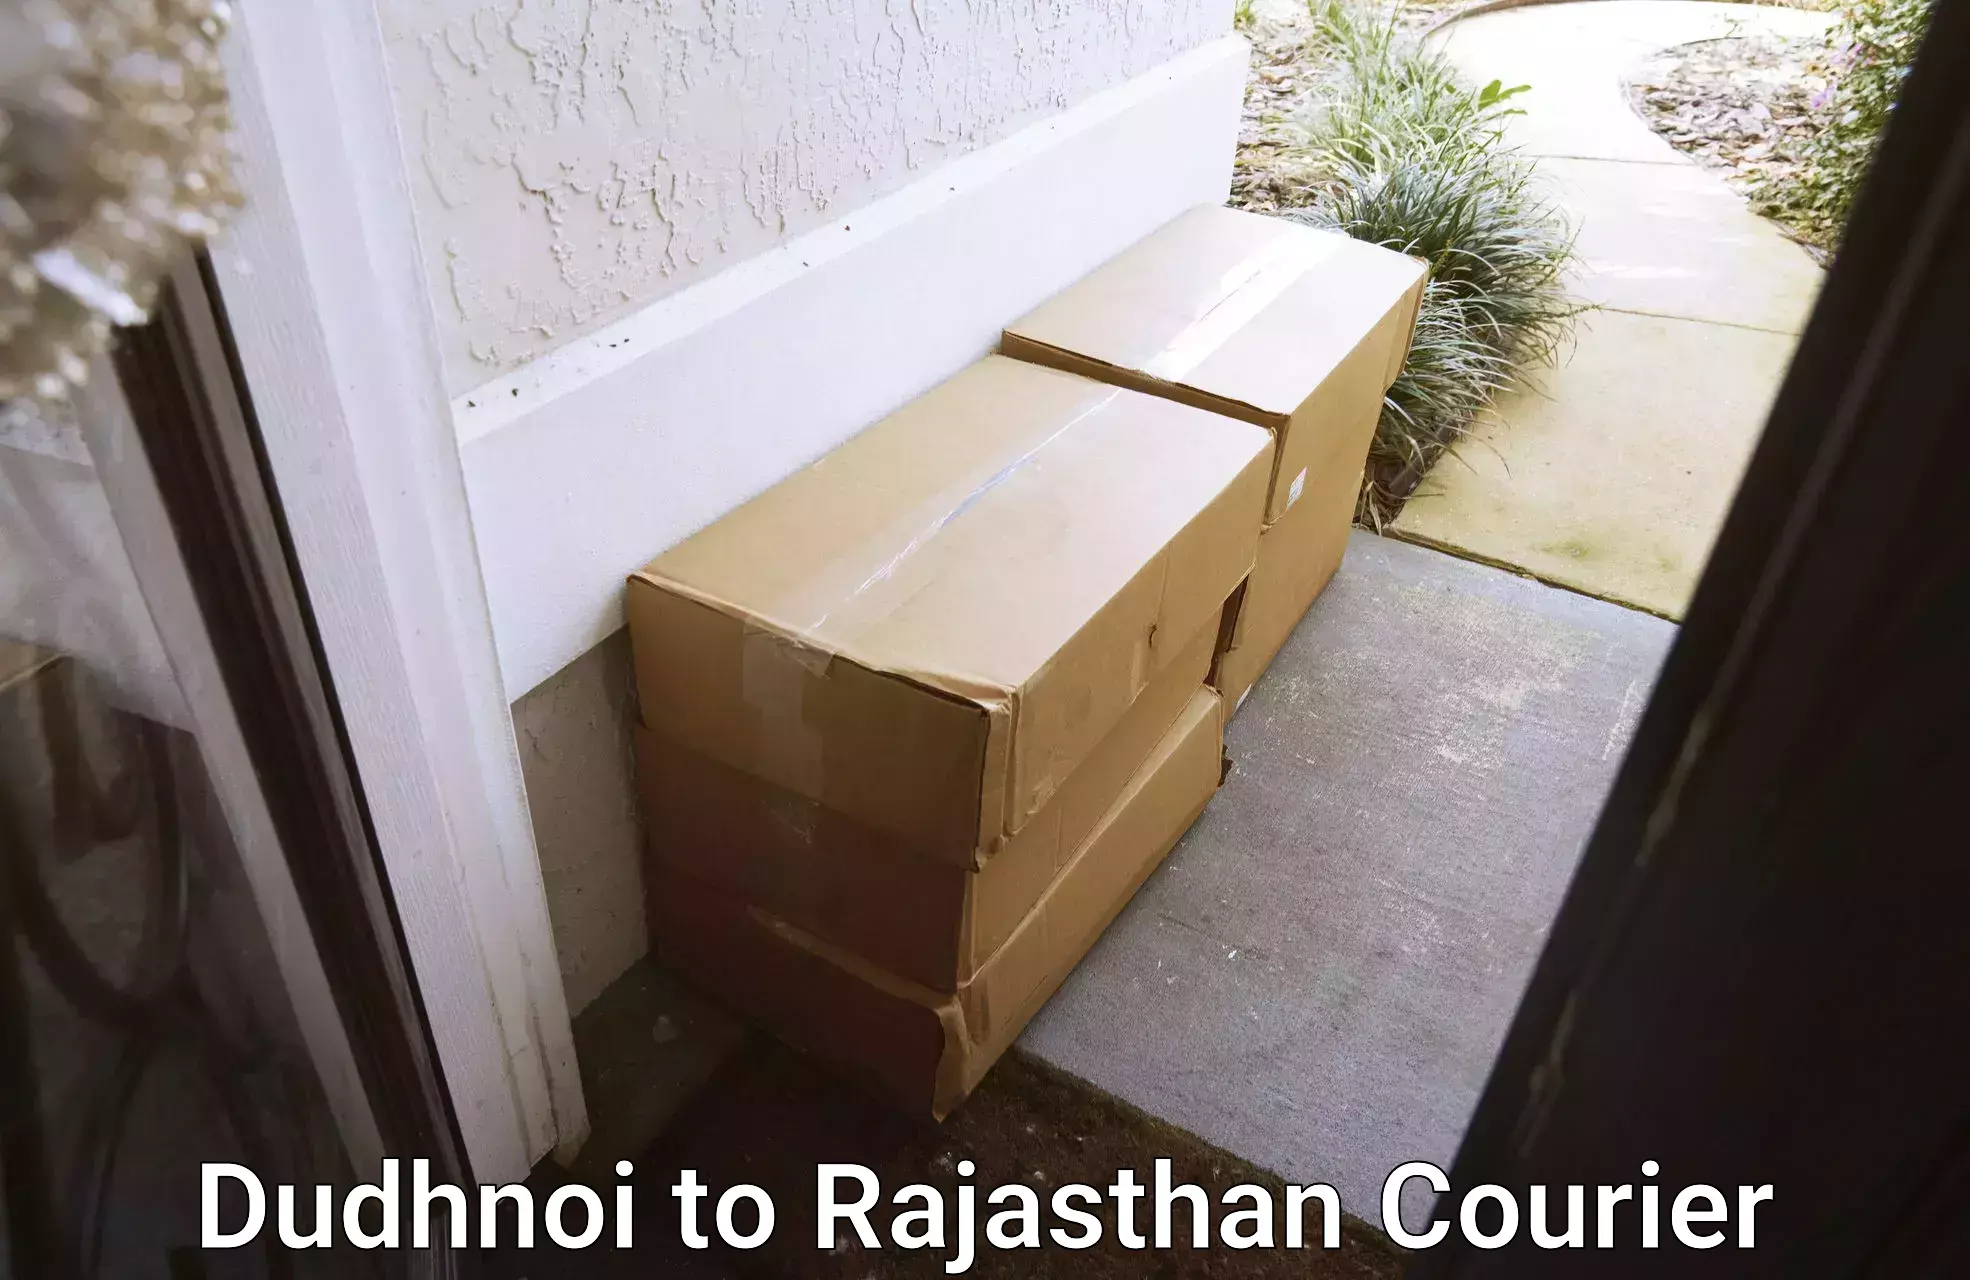 Urgent courier needs Dudhnoi to Bhawani Mandi